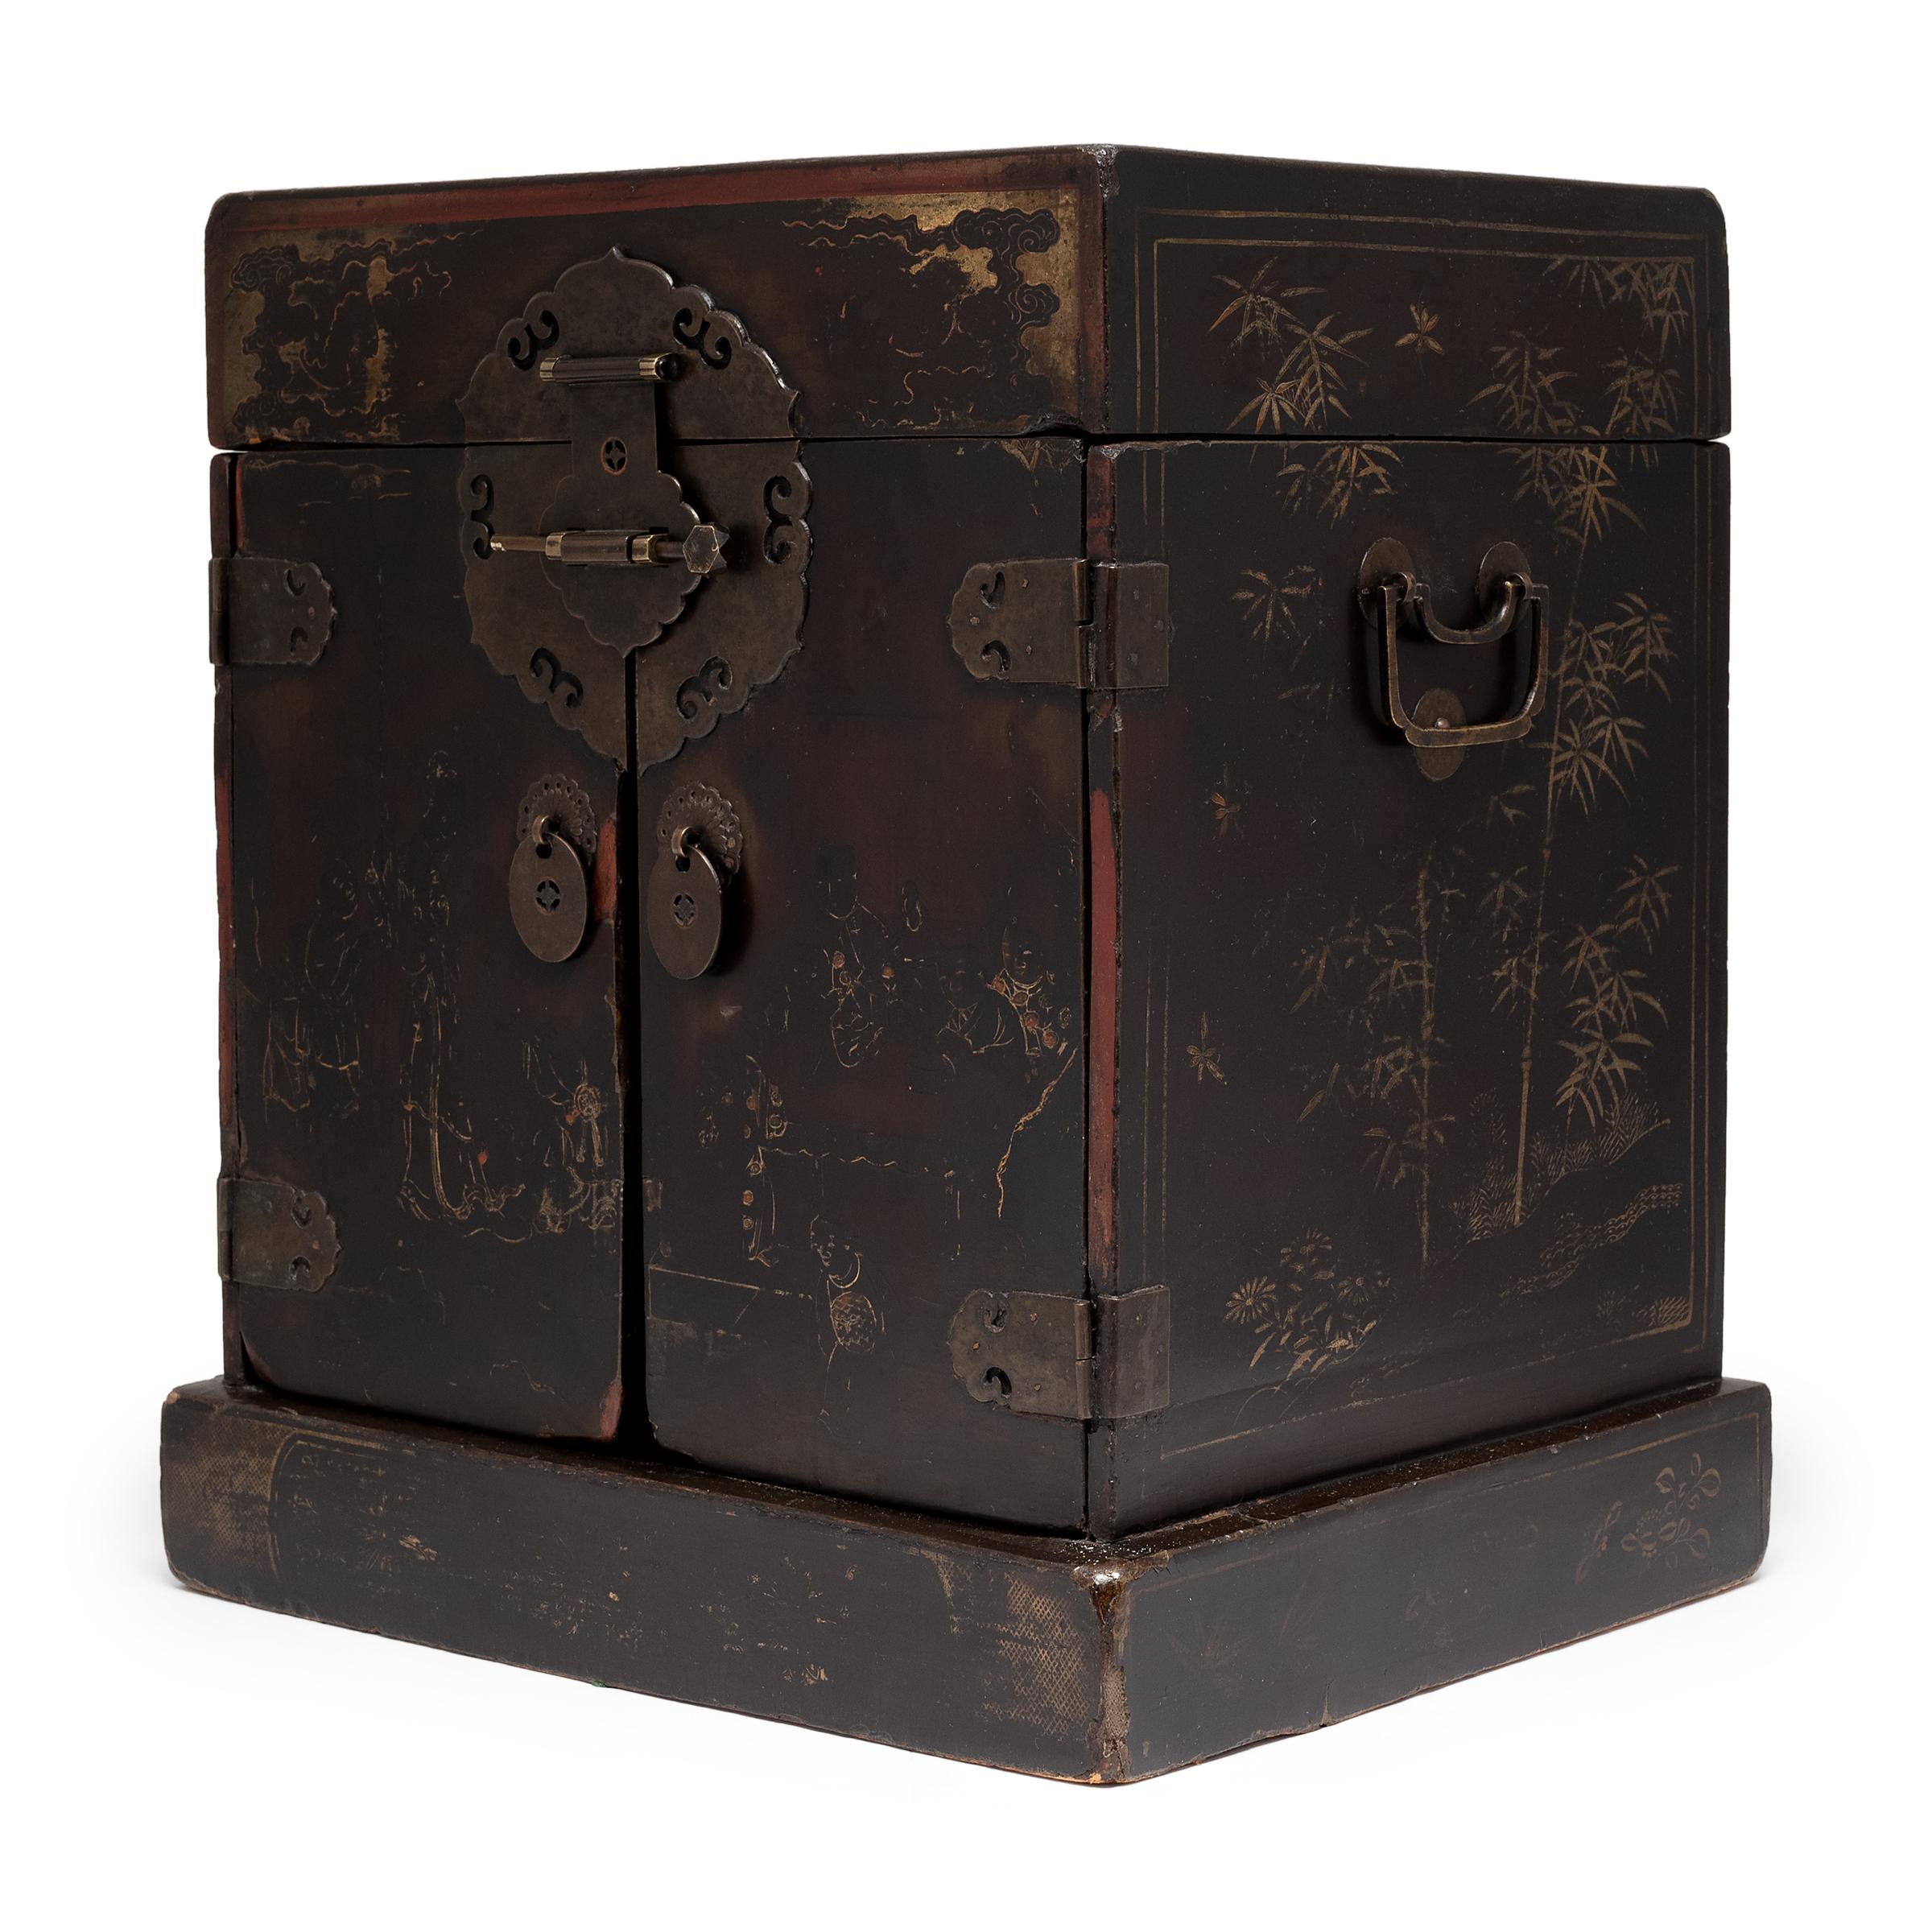 Cet élégant coffre de table était autrefois utilisé dans les quartiers intimes d'une femme de la dynastie Qing pour ranger ses cosmétiques, ses bijoux et autres trésors personnels. La boîte en bois est recouverte de couches de laque noire,